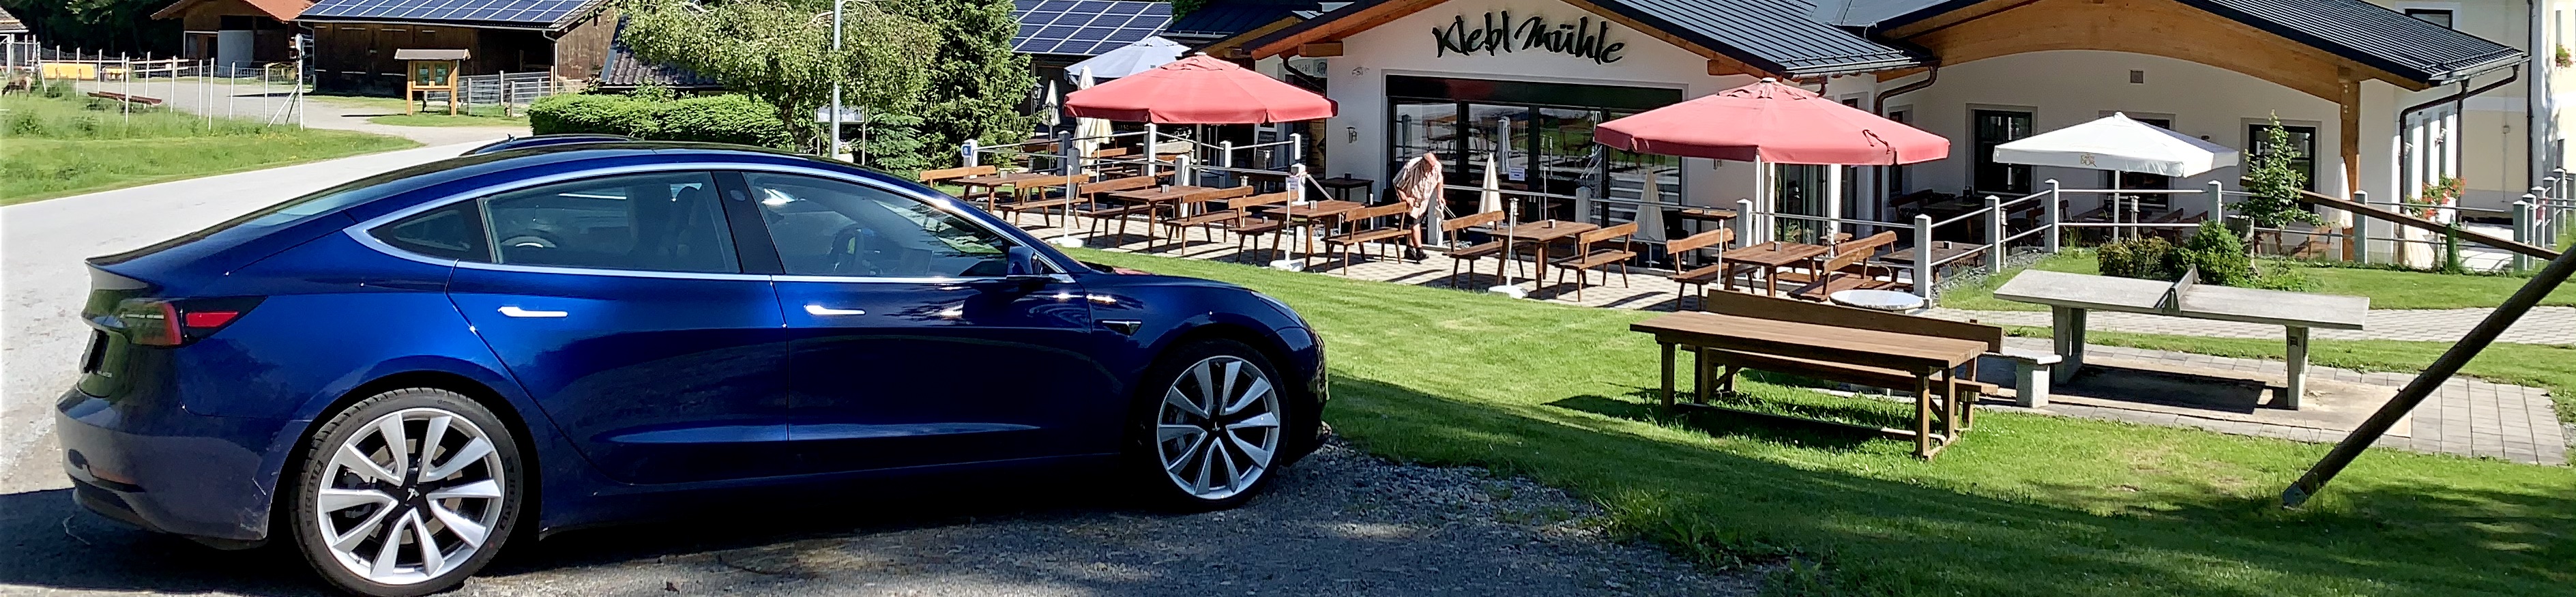 Autotest: Mit dem Tesla durch die Welt